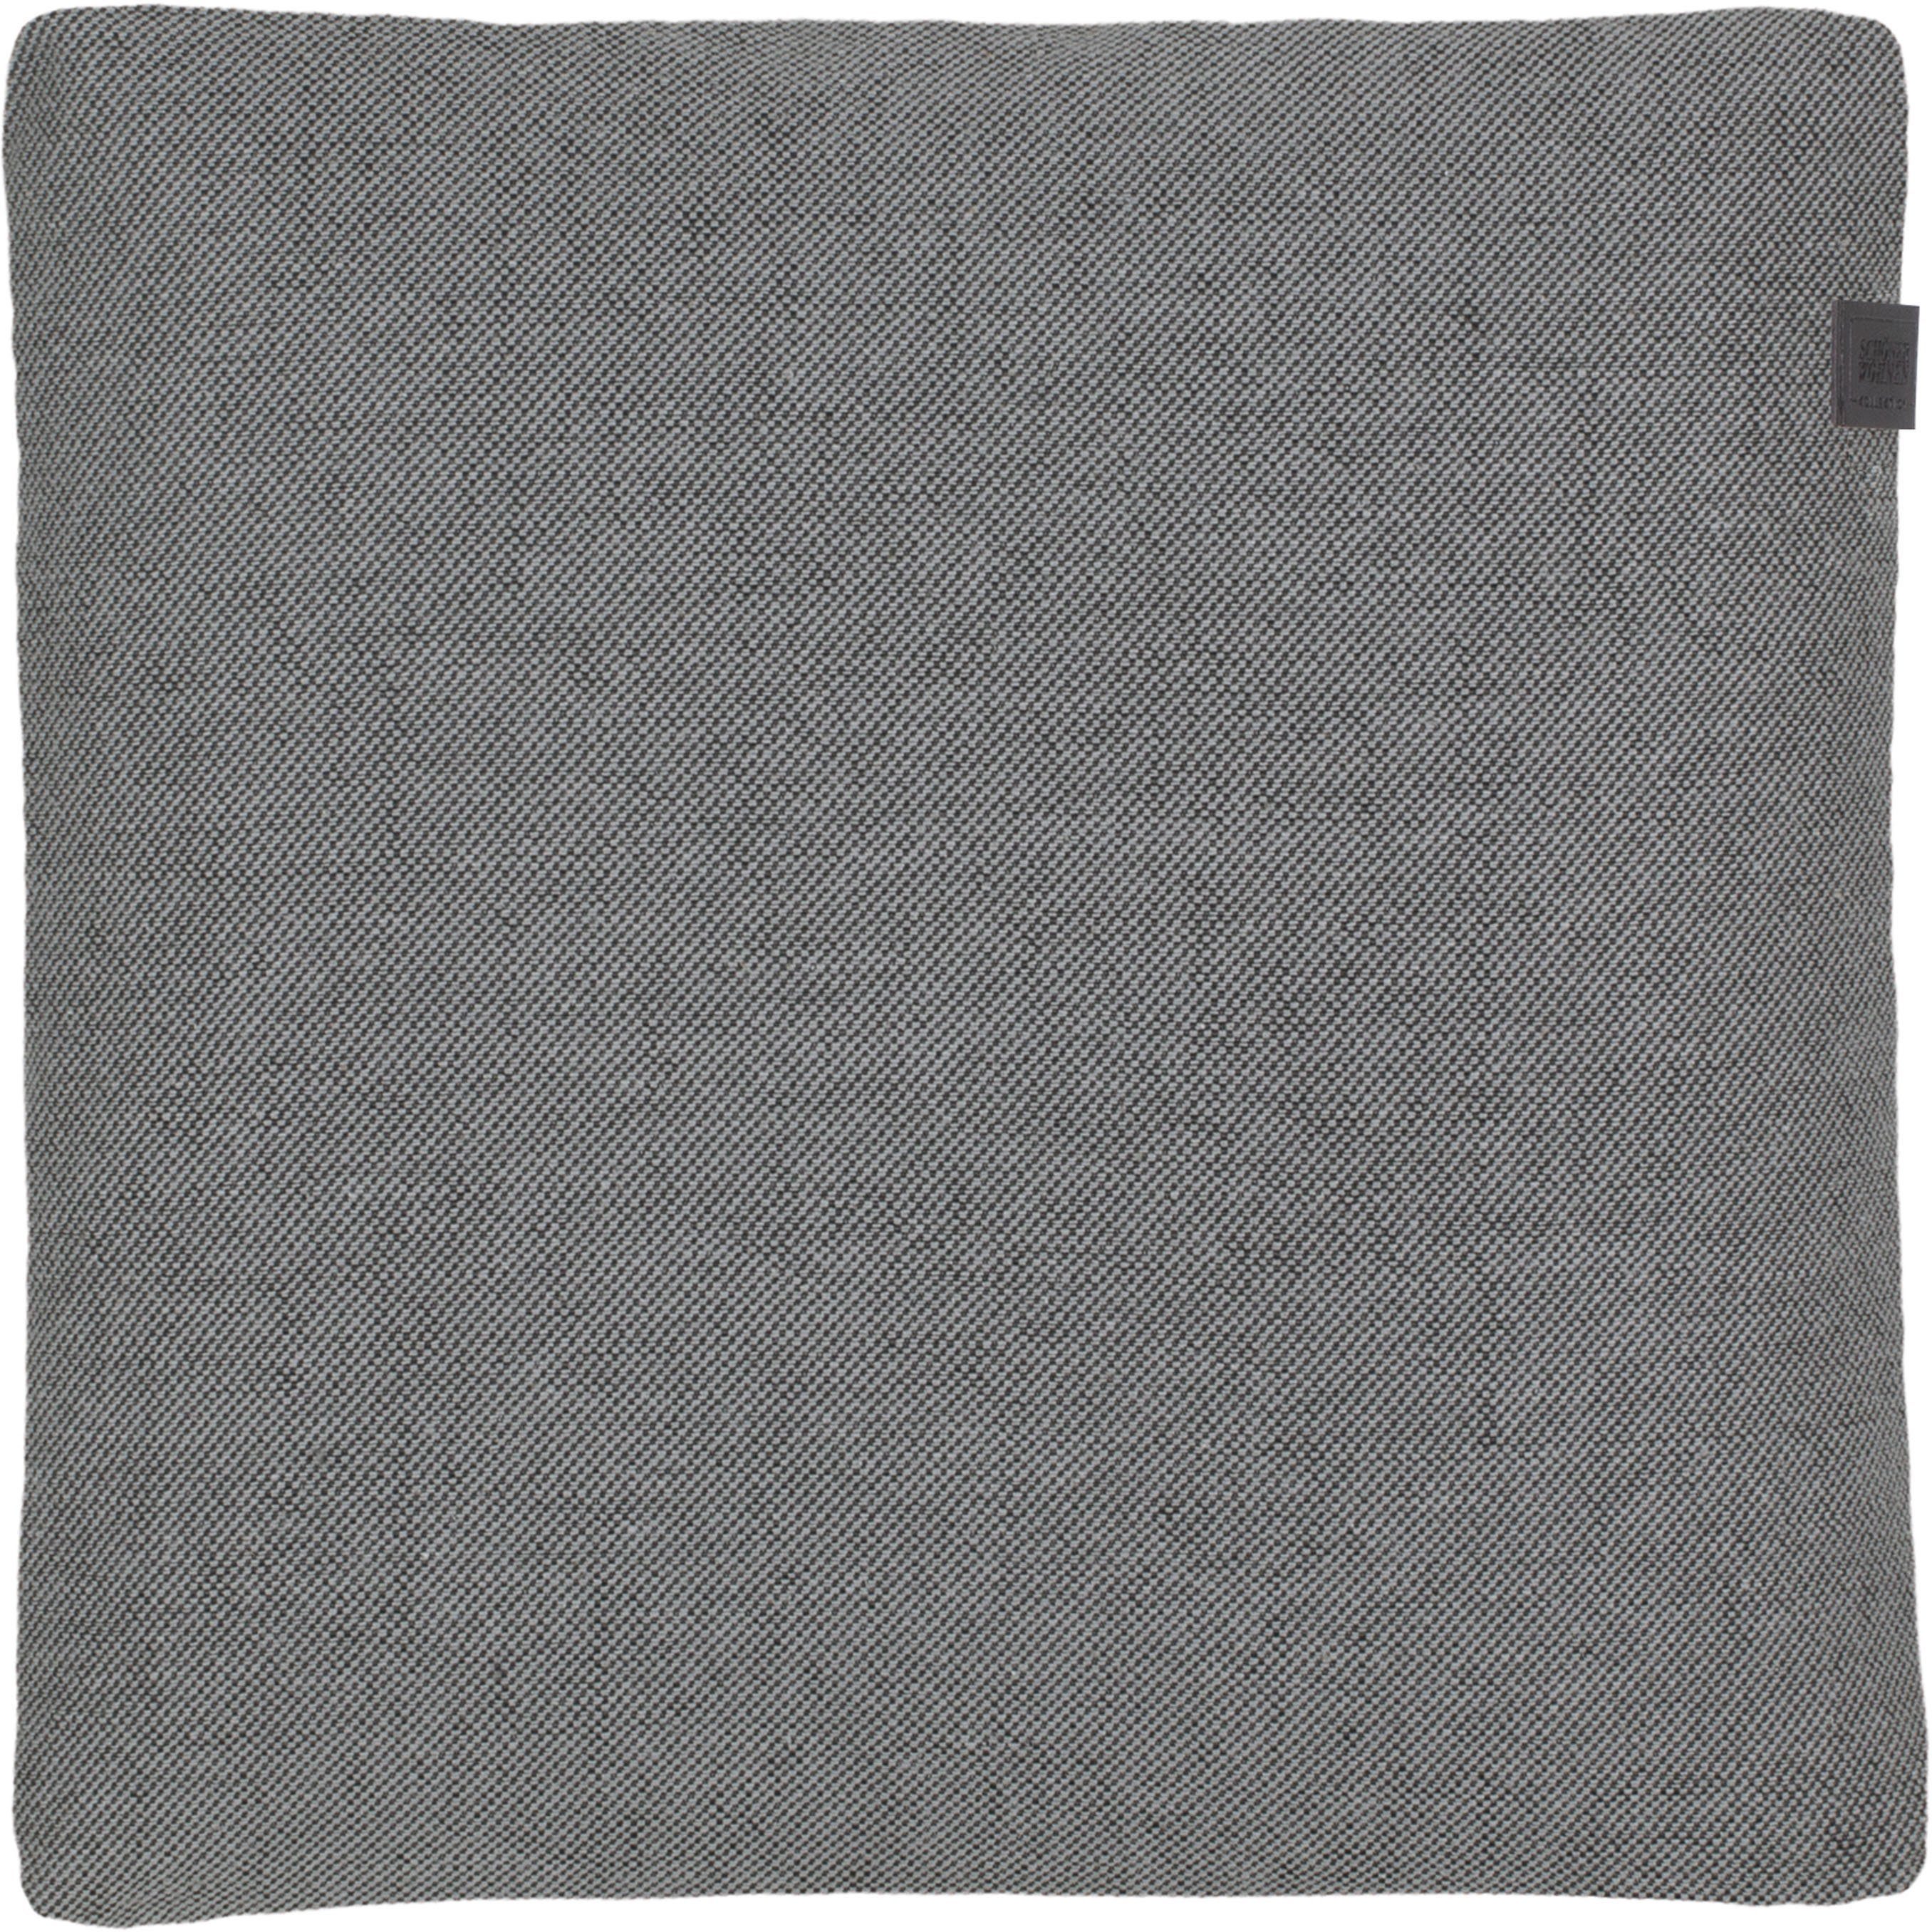 SCHÖNER WOHNEN-Kollektion Dekokissen Solo, 38x38 cm grey | Dekokissen